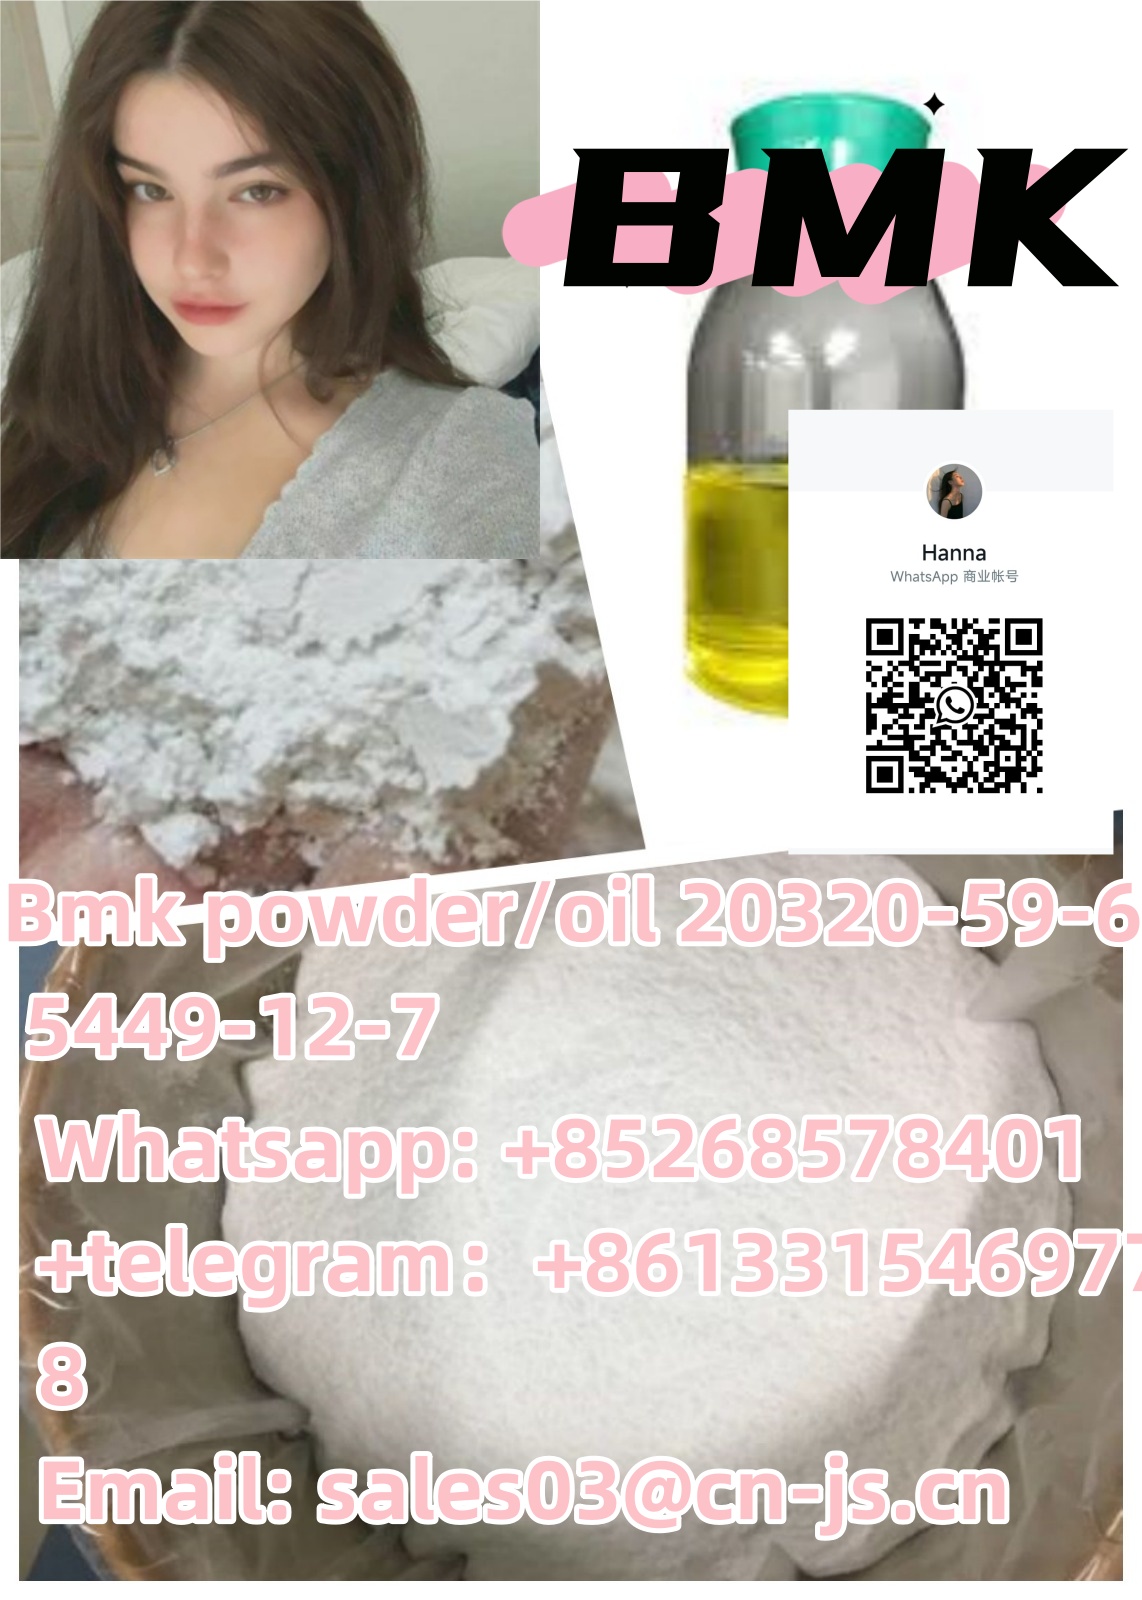 Cheap Bmk powder/oil 20320-59-6 5449-12-7,111,Pets,Dogs